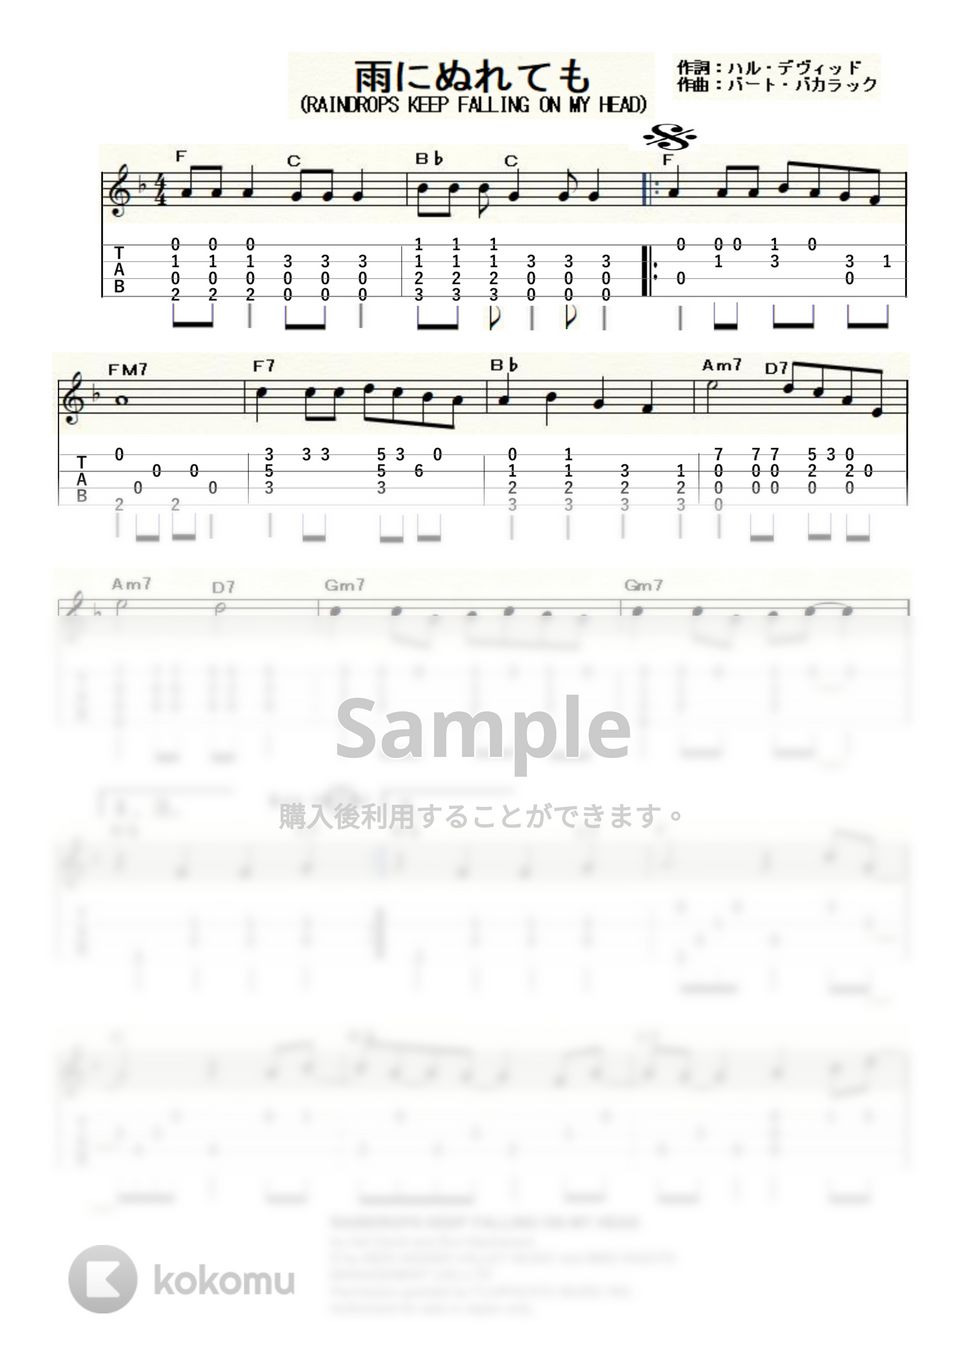 バートバカラック - 雨にぬれても (ｳｸﾚﾚｿﾛ / Low-G / 中級) by ukulelepapa